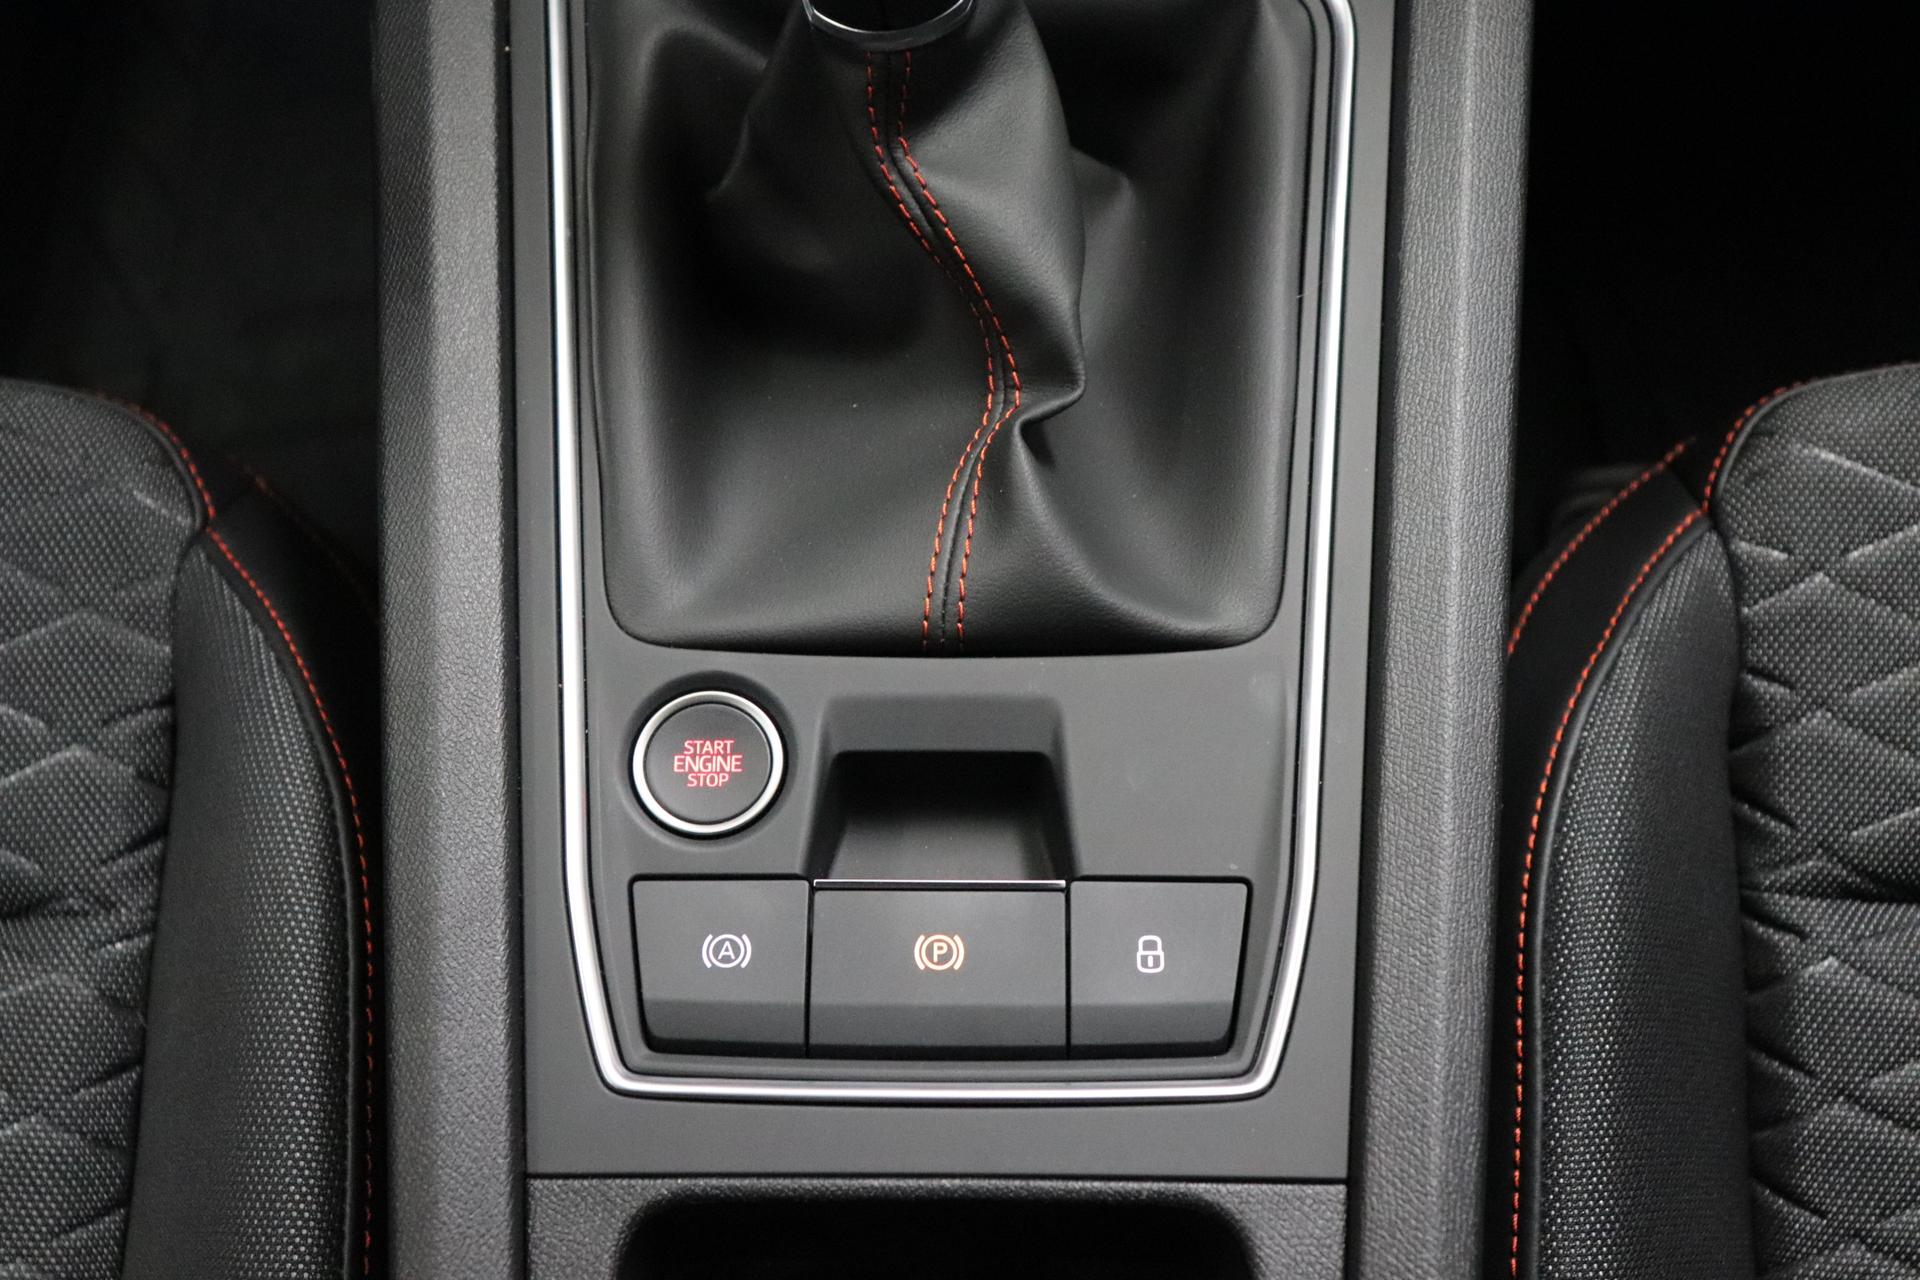 Seat Leon FR 1,5l 96 kW 131PS 16V TSI ACT Navigationssystem,  Rückfahrkamera, 3 Zonen Klimaautomatik, Adaptive Geschwindigkeitsregelung,  Spurhalteassistent, Sitzheizung, Lenkradheizung, 17Zoll Leichtmetallfelgen,  Apple CarPlay, Android Auto uvm